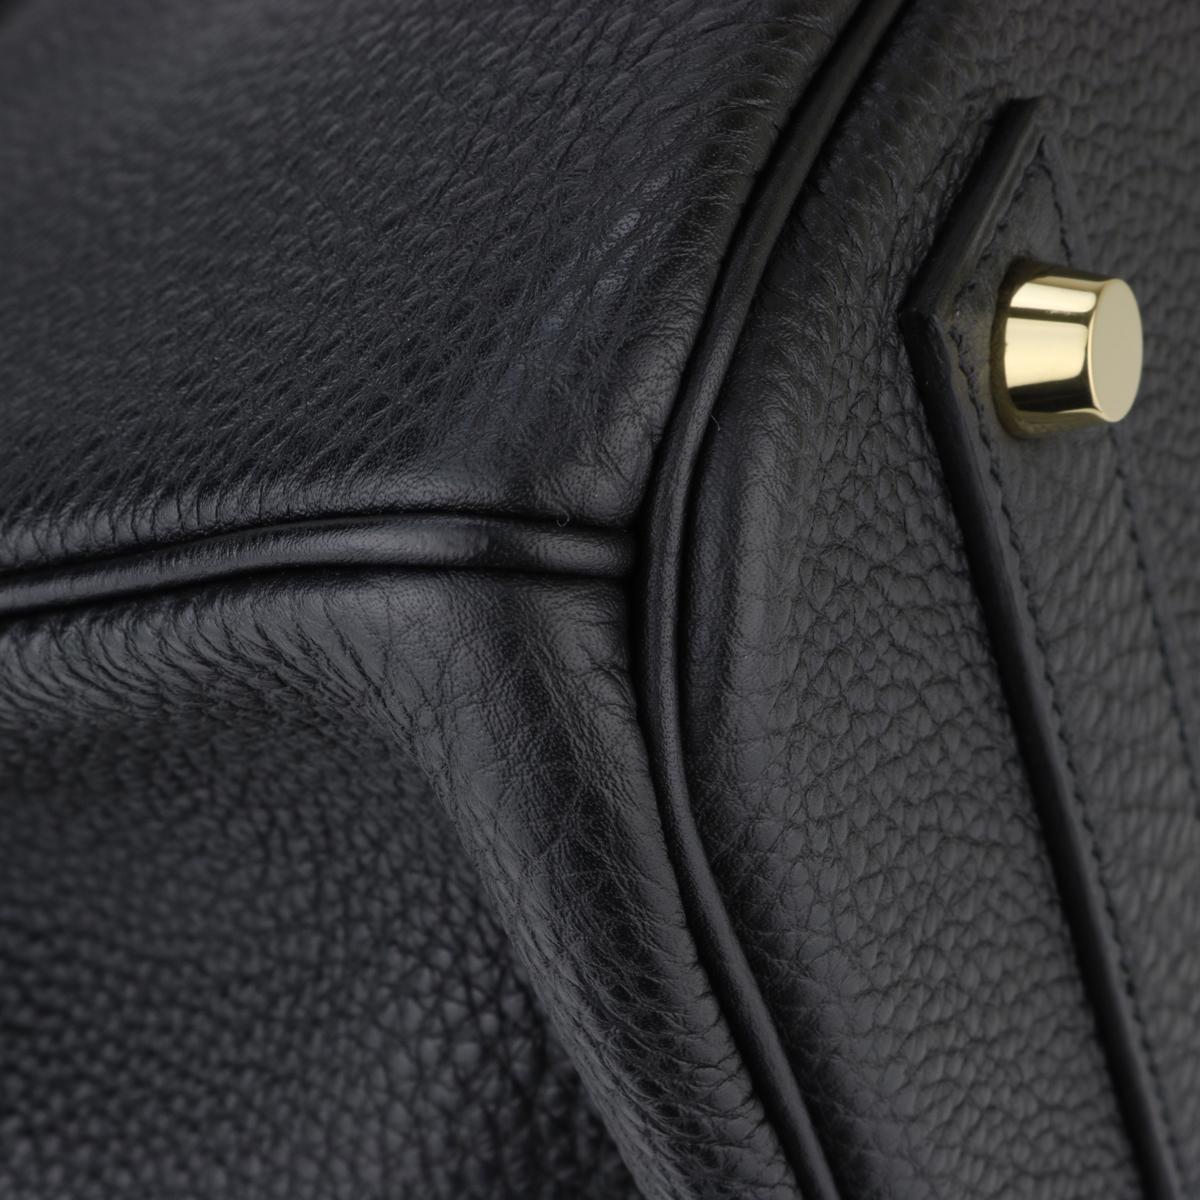 Hermès Birkin Bag 40cm Black Togo Leather with Gold Hardware Stamp N 2010 3